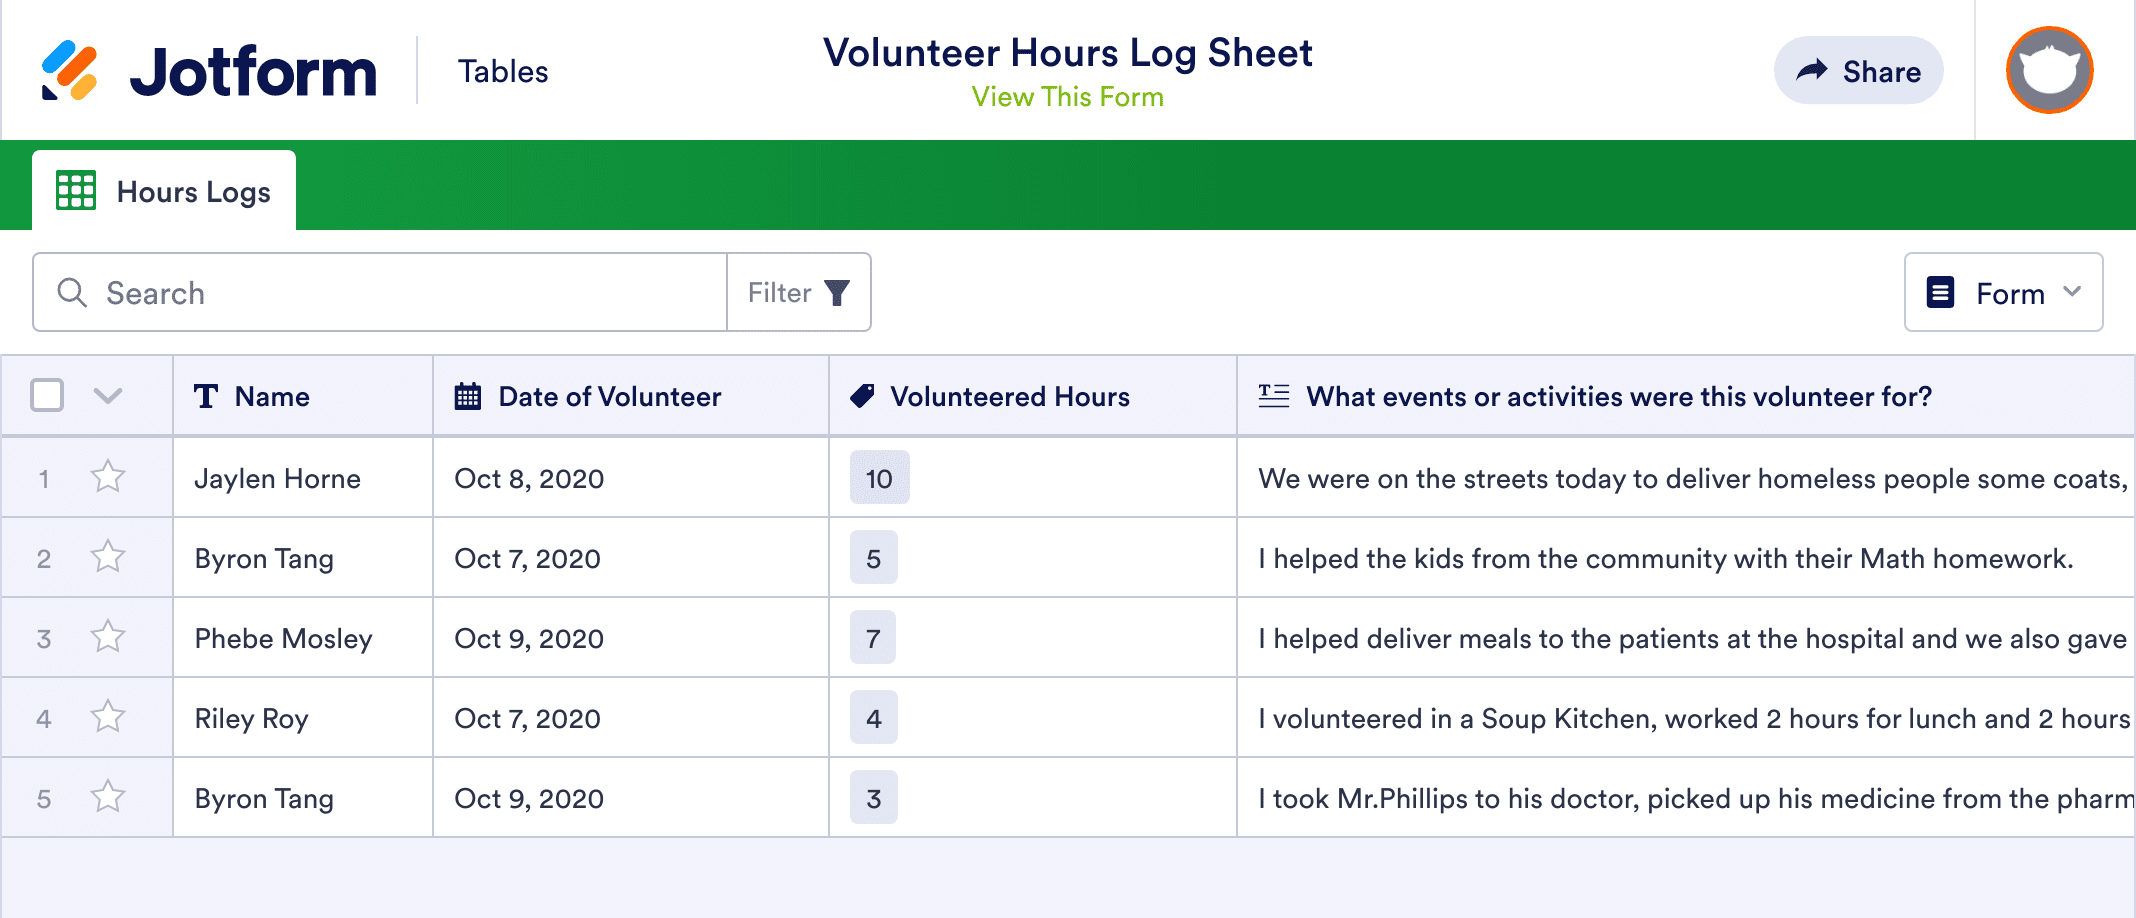 Volunteer Hours Log Sheet